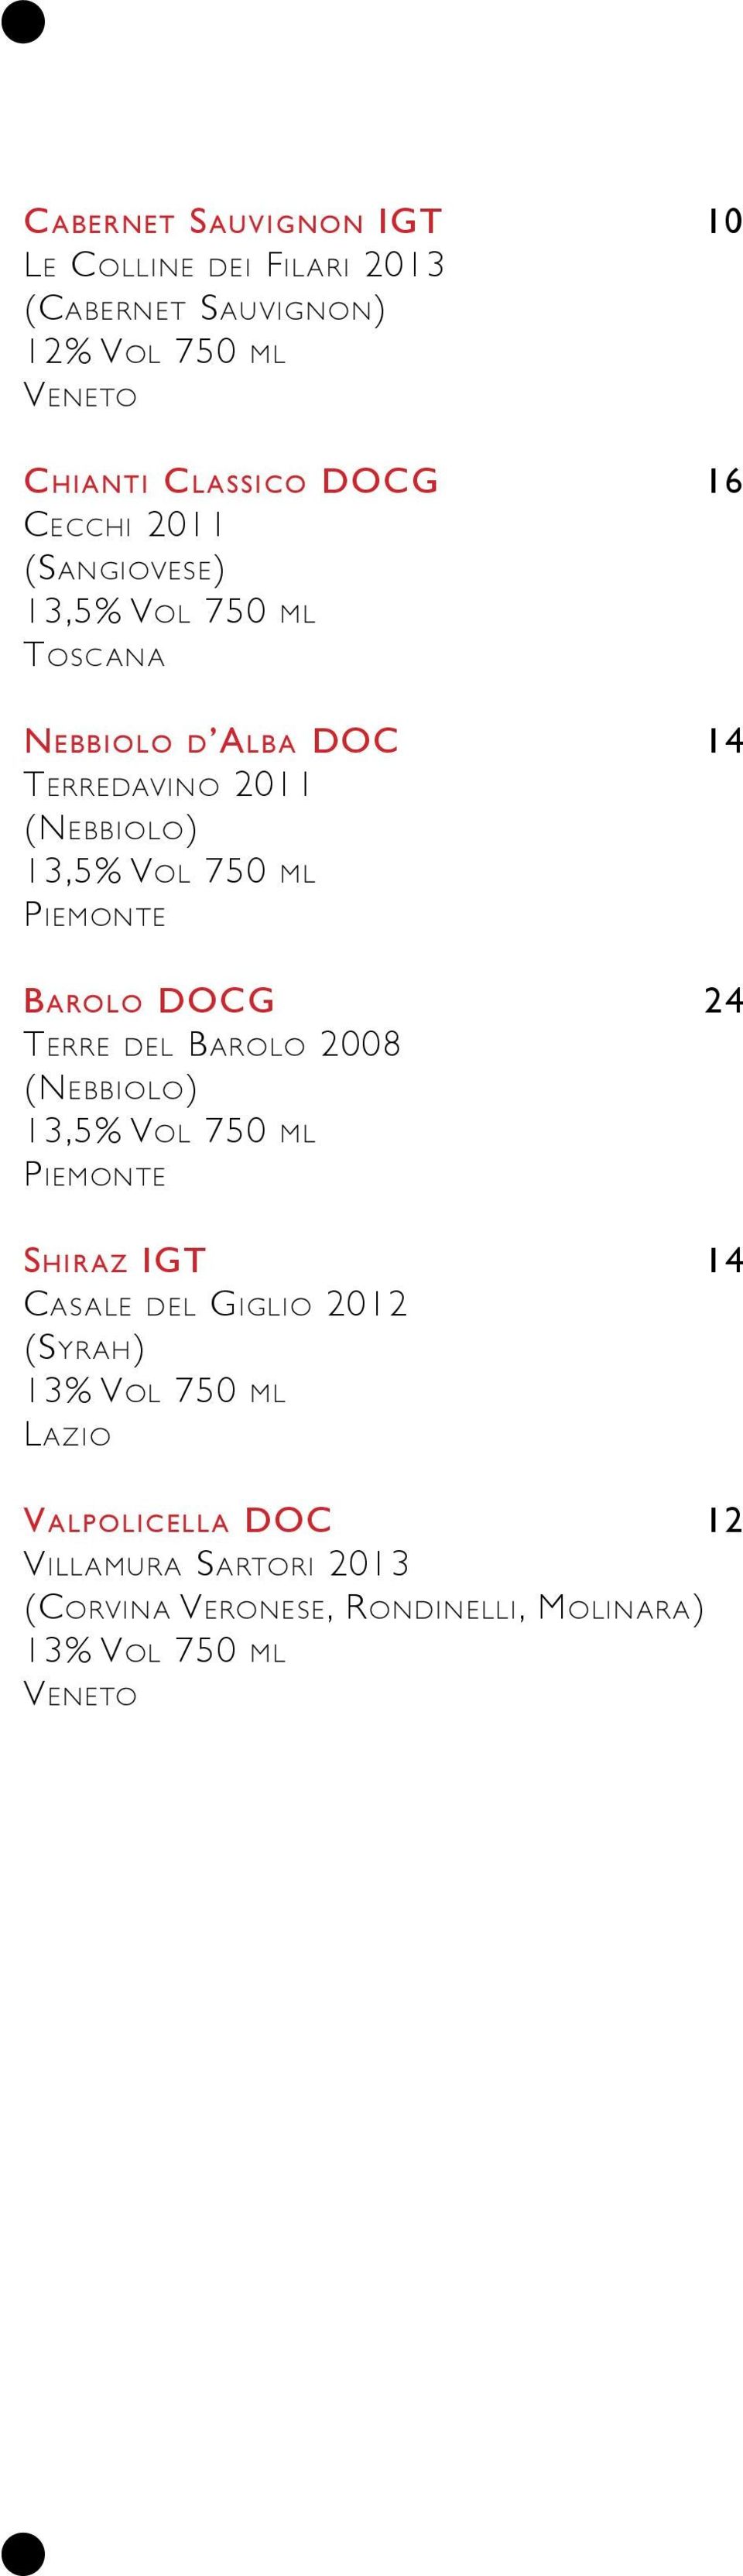 Piemonte Barolo DOCG 24 Terre del Barolo 2008 (Nebbiolo) 13,5% Vol 750 ml Piemonte Shiraz IGT 14 Casale del Giglio 2012